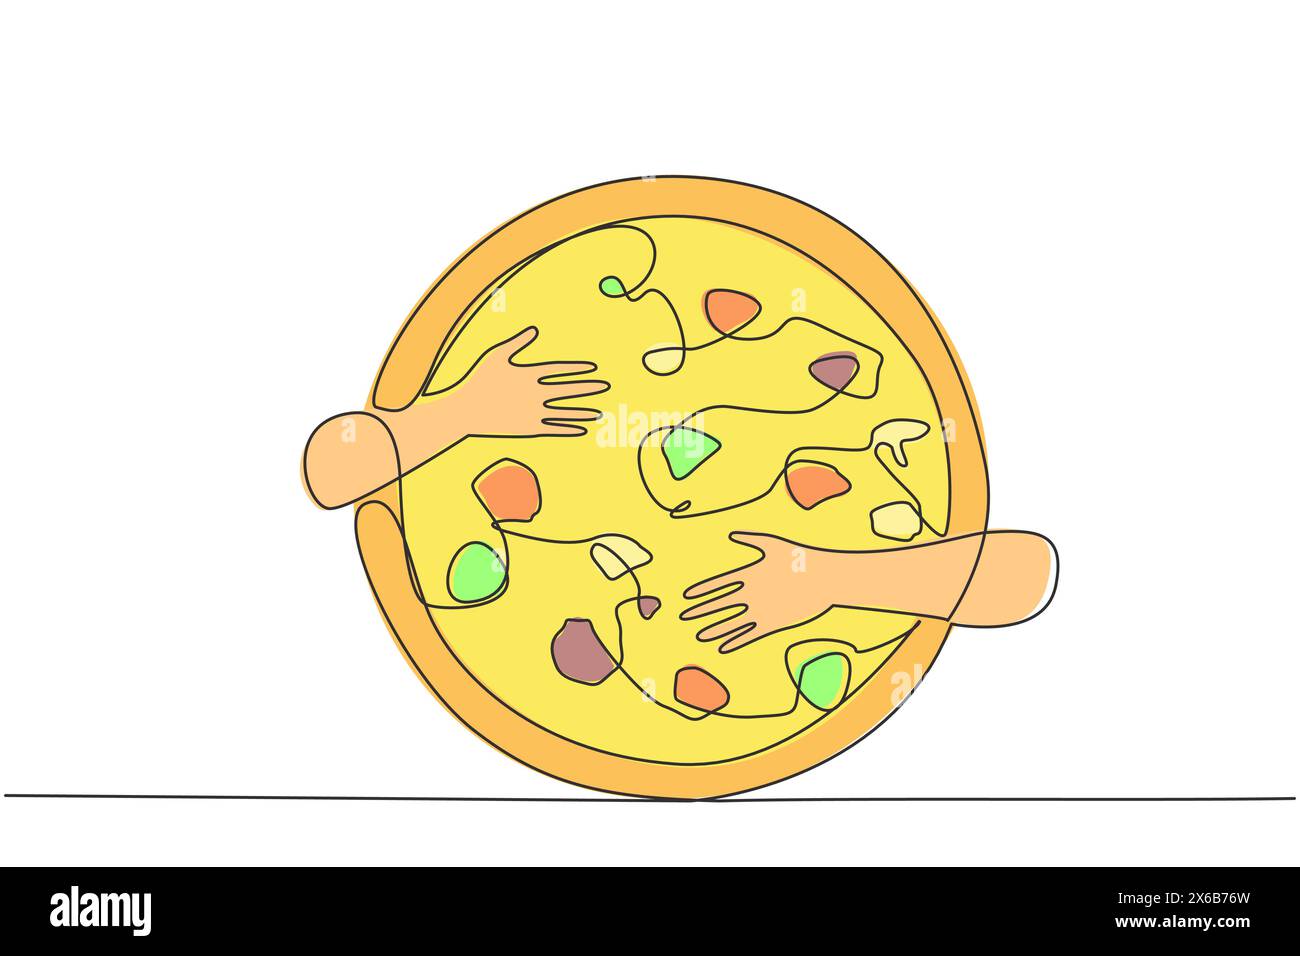 Dessin continu d'une ligne de mains serrant une pizza. Culinaire d'Italie qui est maintenant connu dans le monde entier. Nourriture typique sous la forme de circulaire Illustration de Vecteur